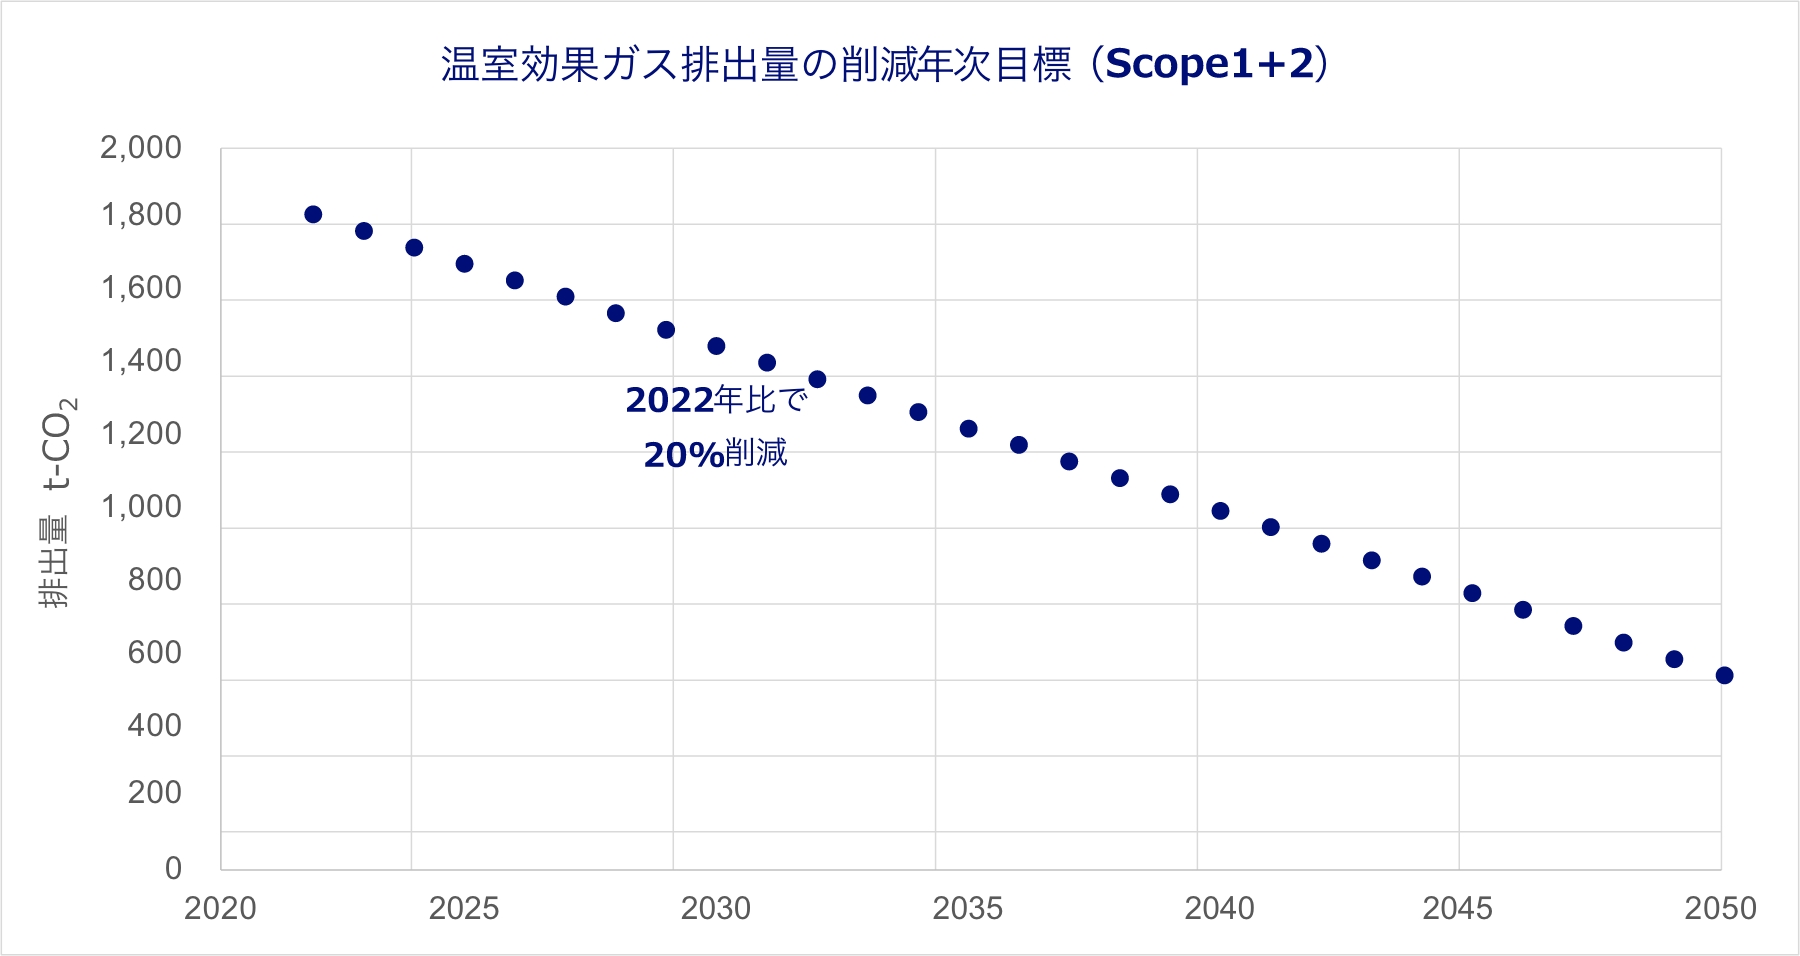 温室効果ガス排出量の削減年次目標(Scope1+2)